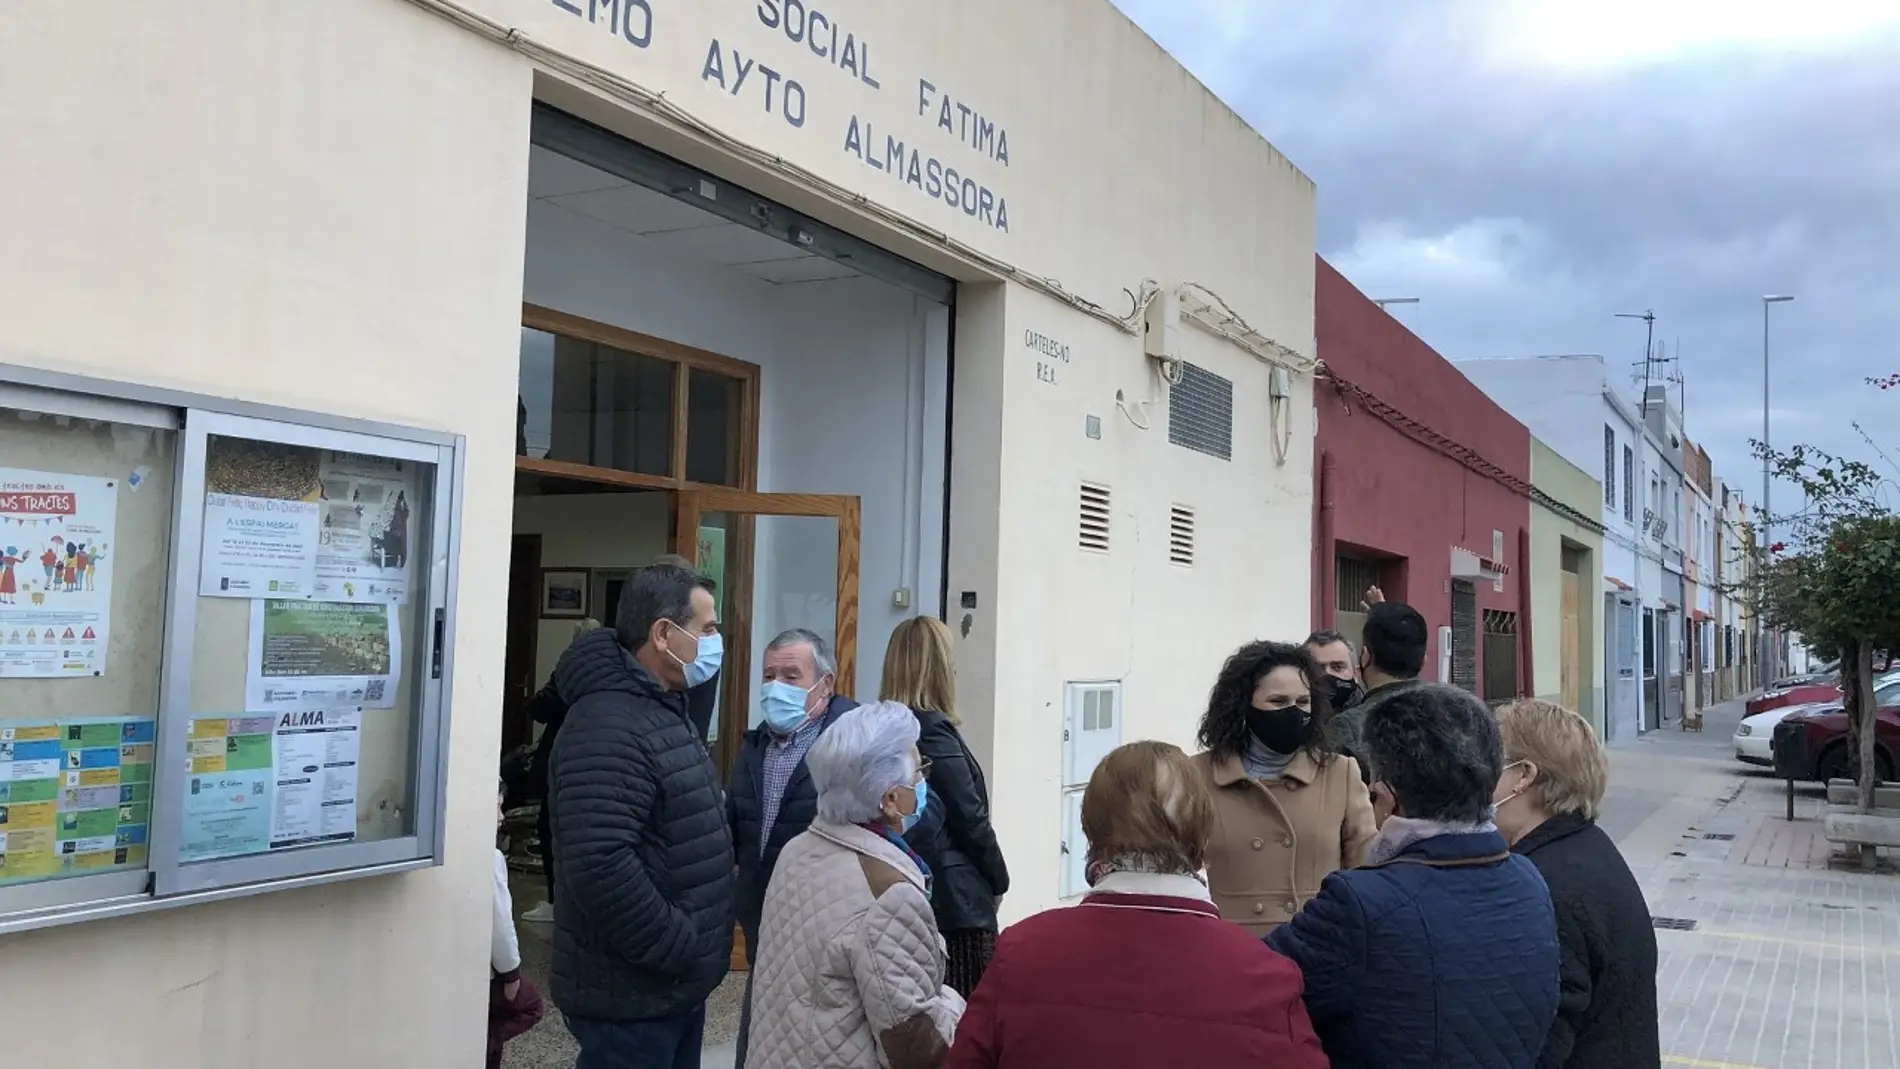 El barrio de Fátima estrenará otro local social en Almassora